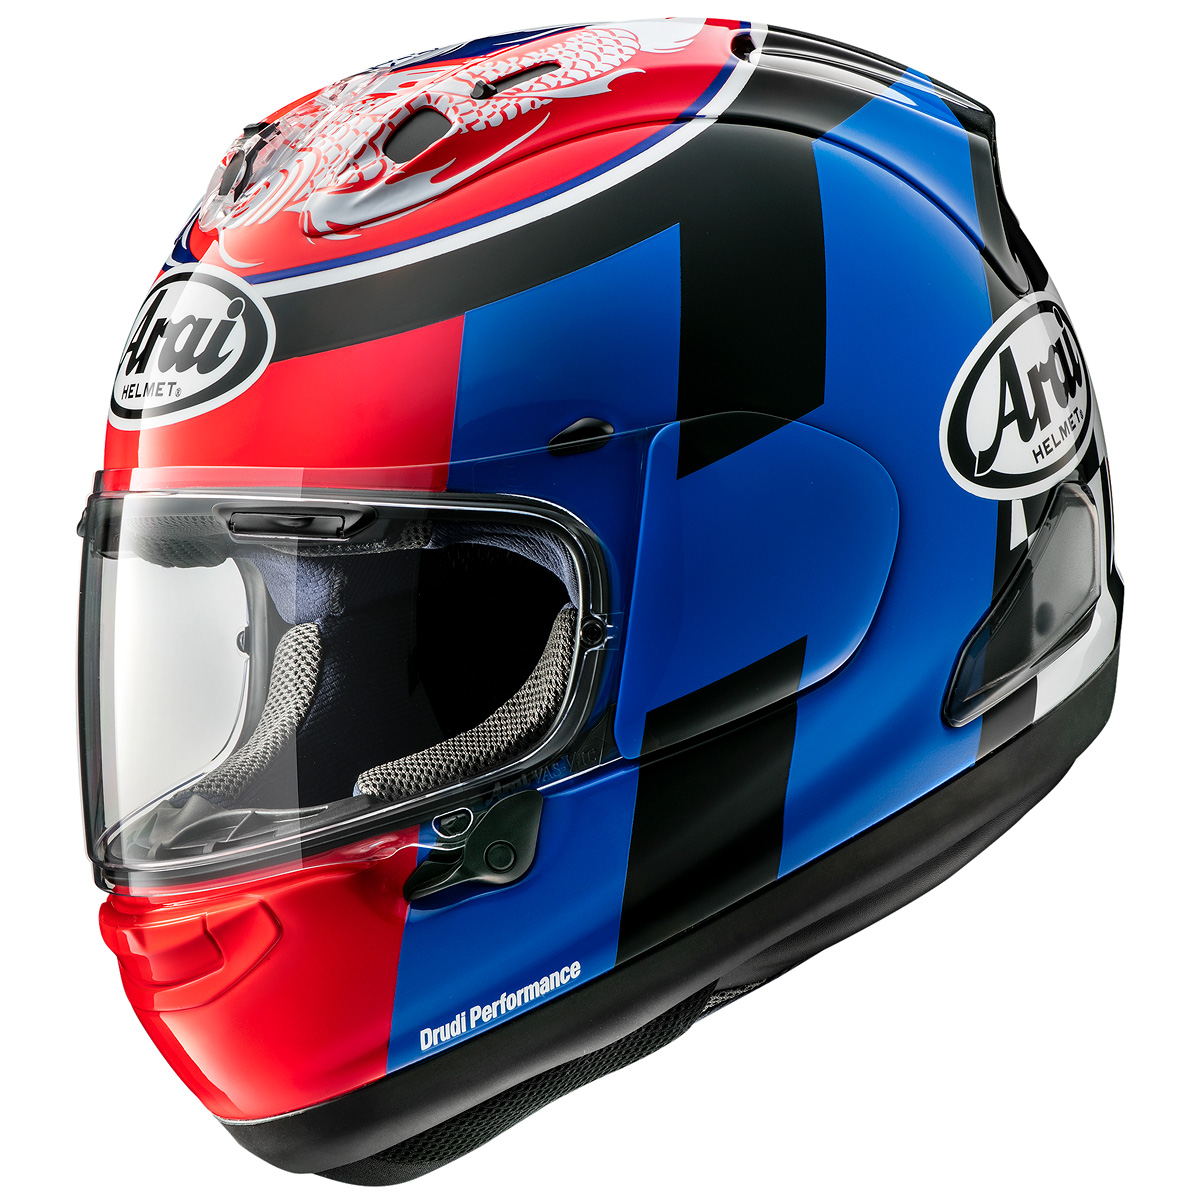 WSBKライダー、レオン・ハスラム選手のレプリカヘルメット「RX-7X